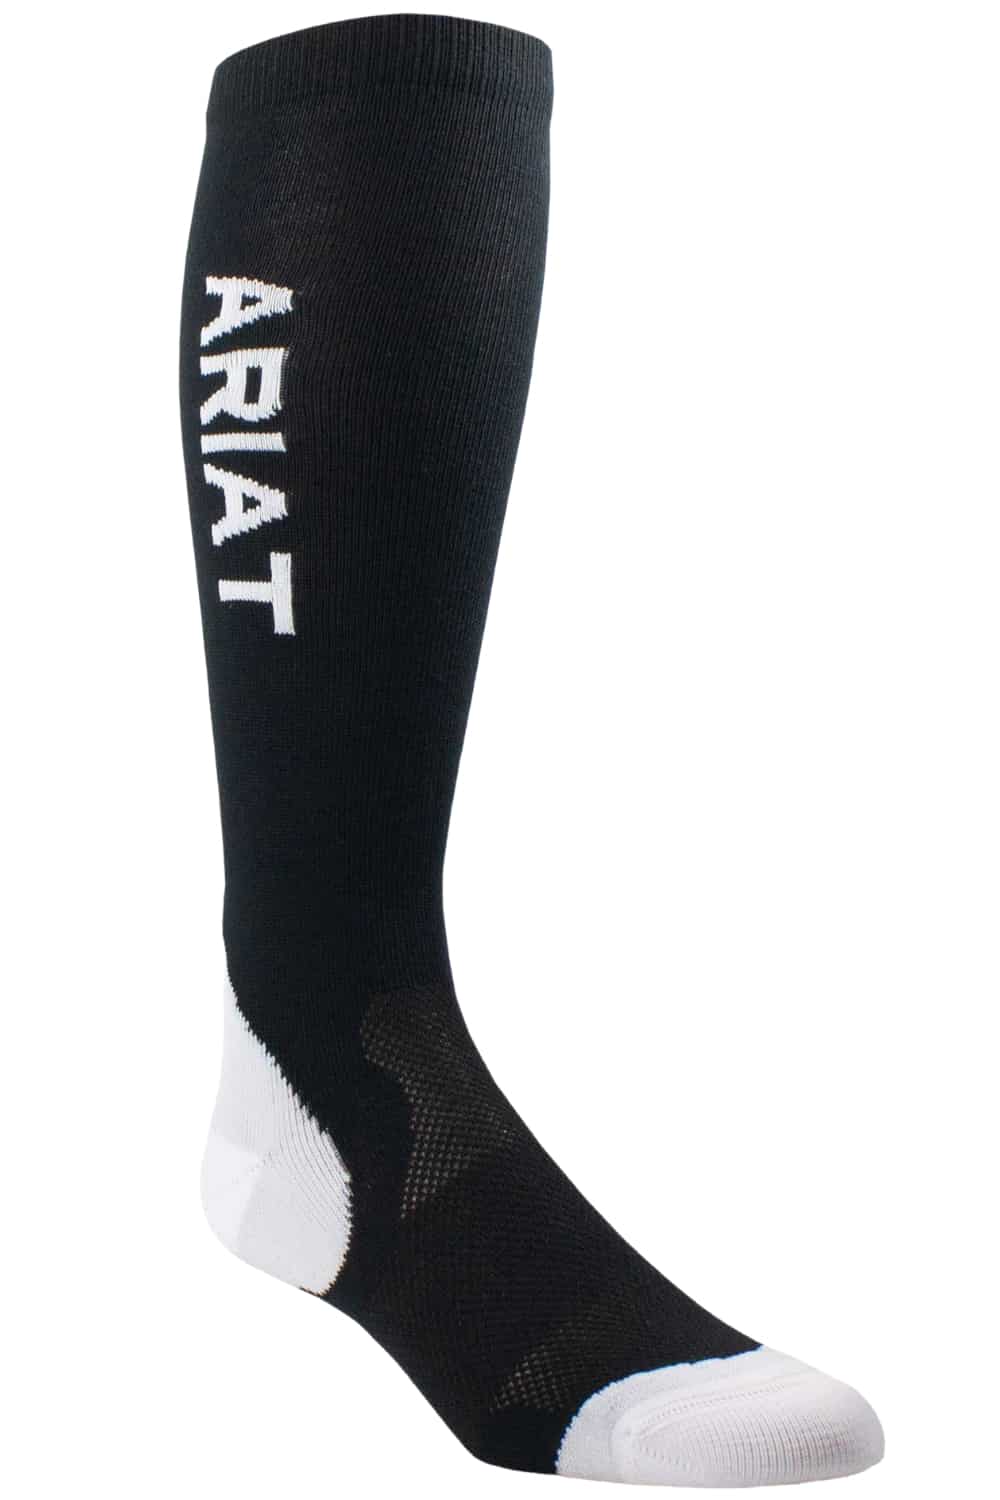 AriatTEK Performance Socks in Black/White 